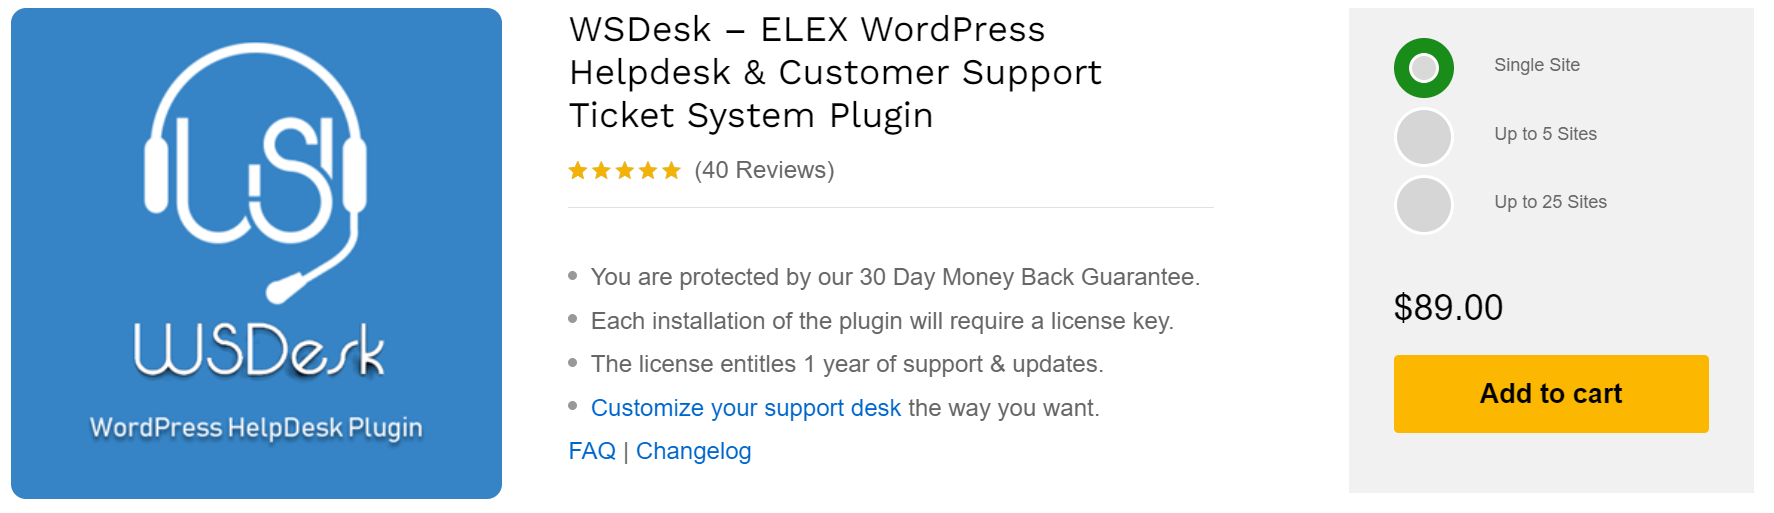 Best Help Desk Ticketing Systems | WSDesk – ELEX WordPress Helpdesk & Customer Support Ticket System Plugin